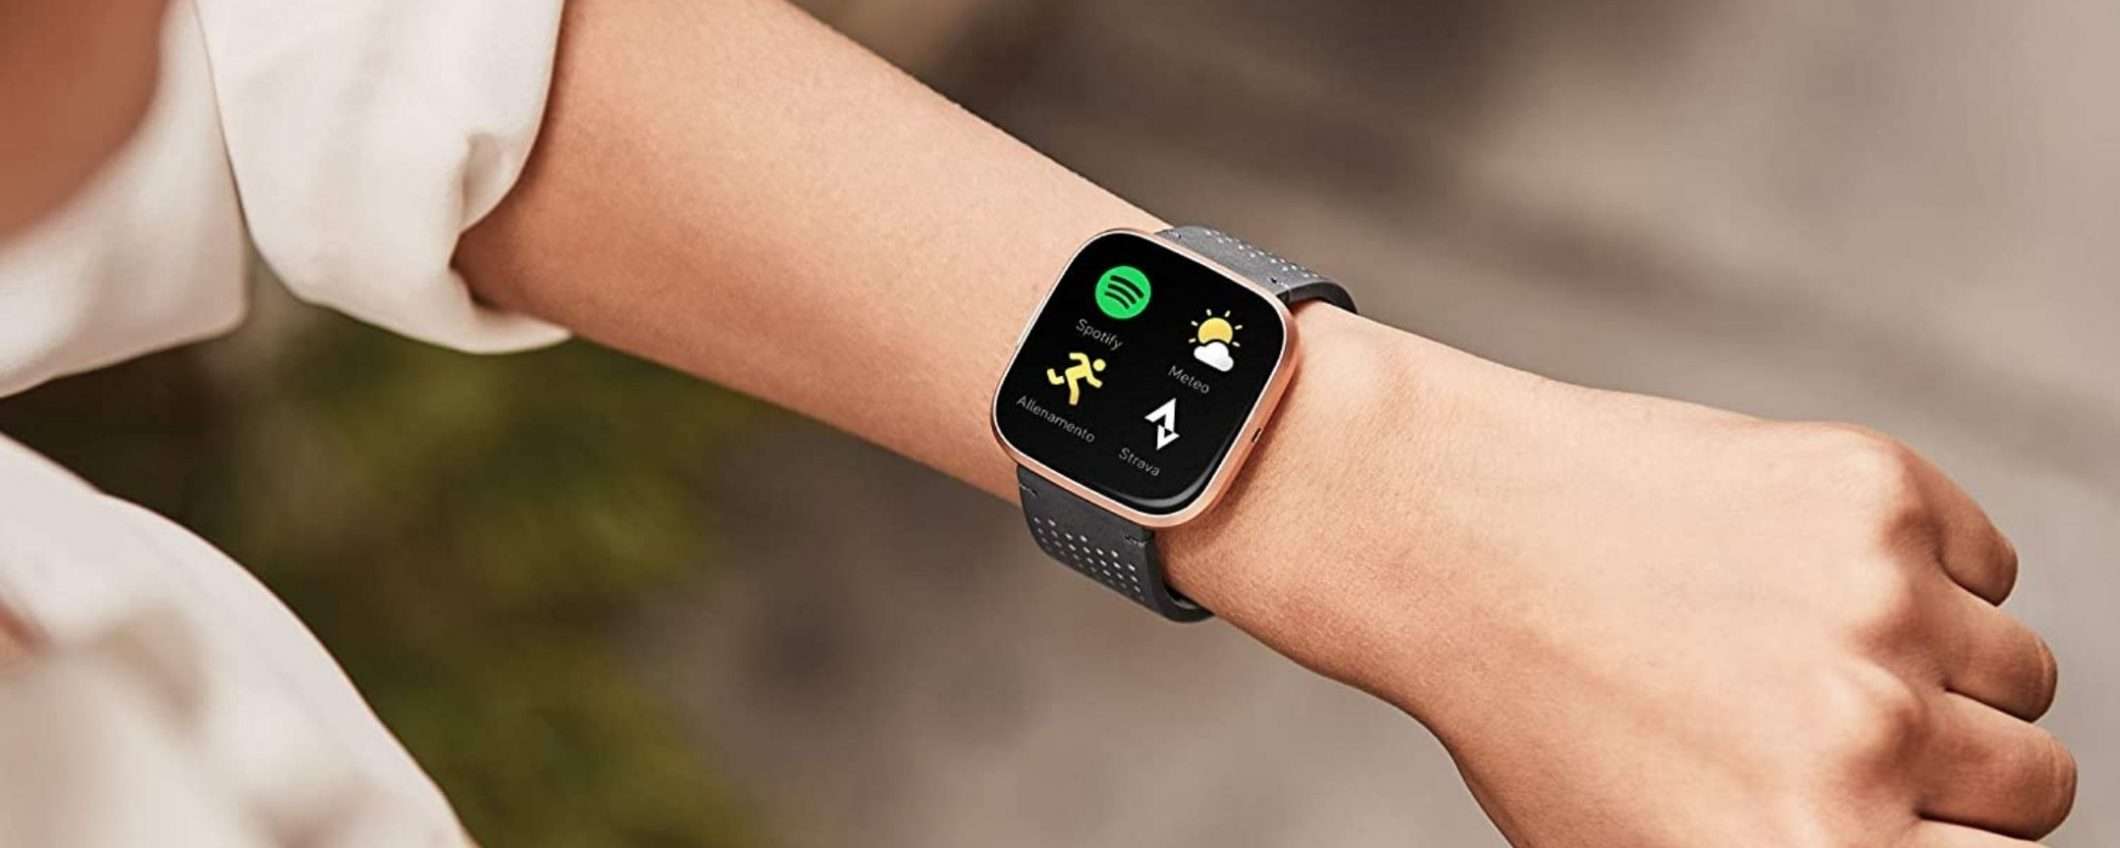 Fitbit Versa 2 ed hai lo smartwatch perfetto al polso